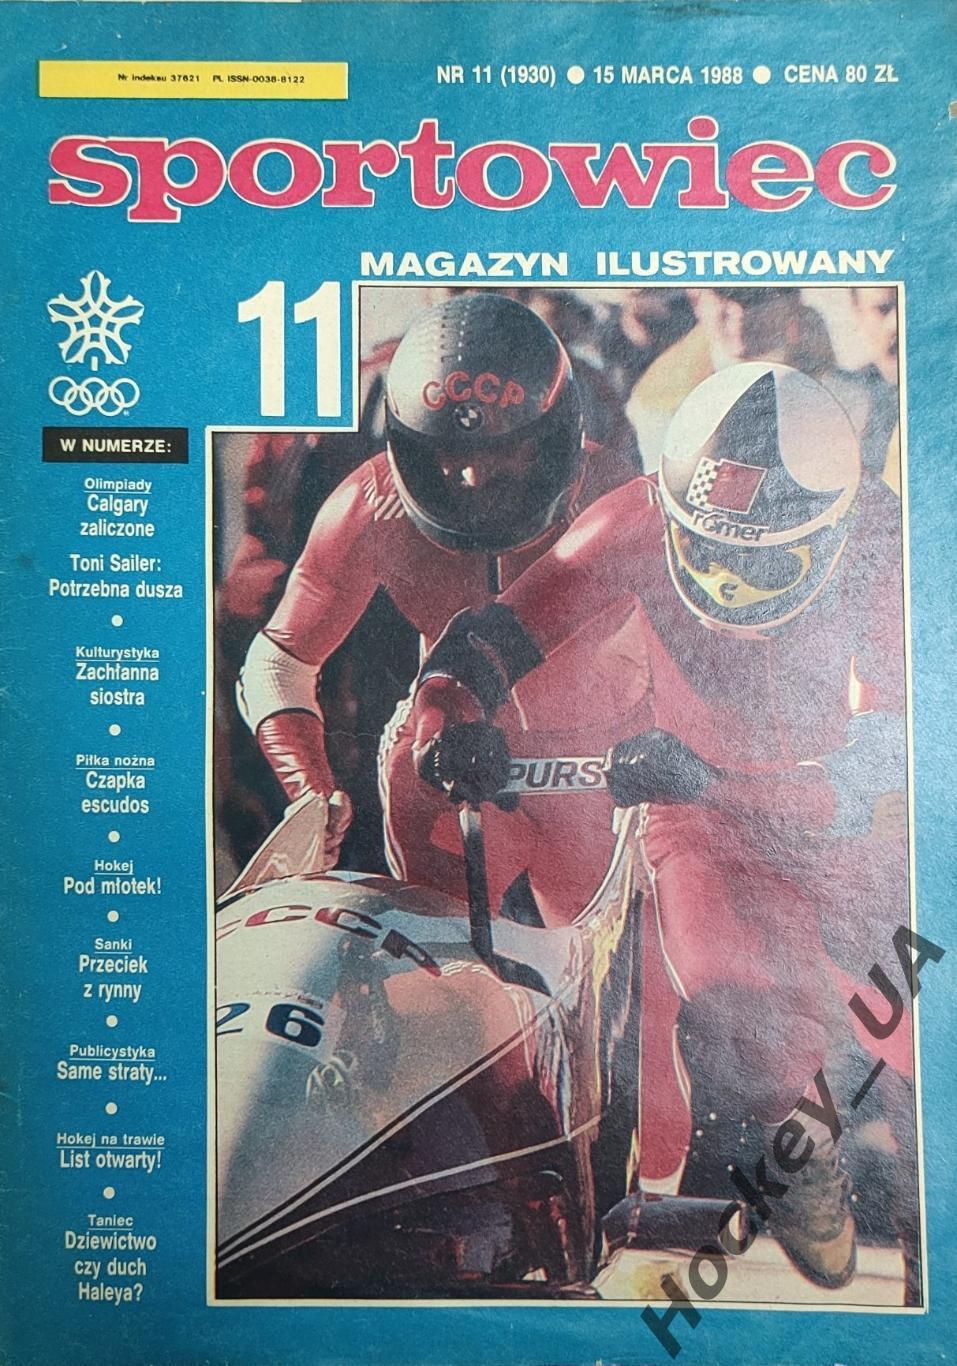 Sportowiec №11, 15.03.1988